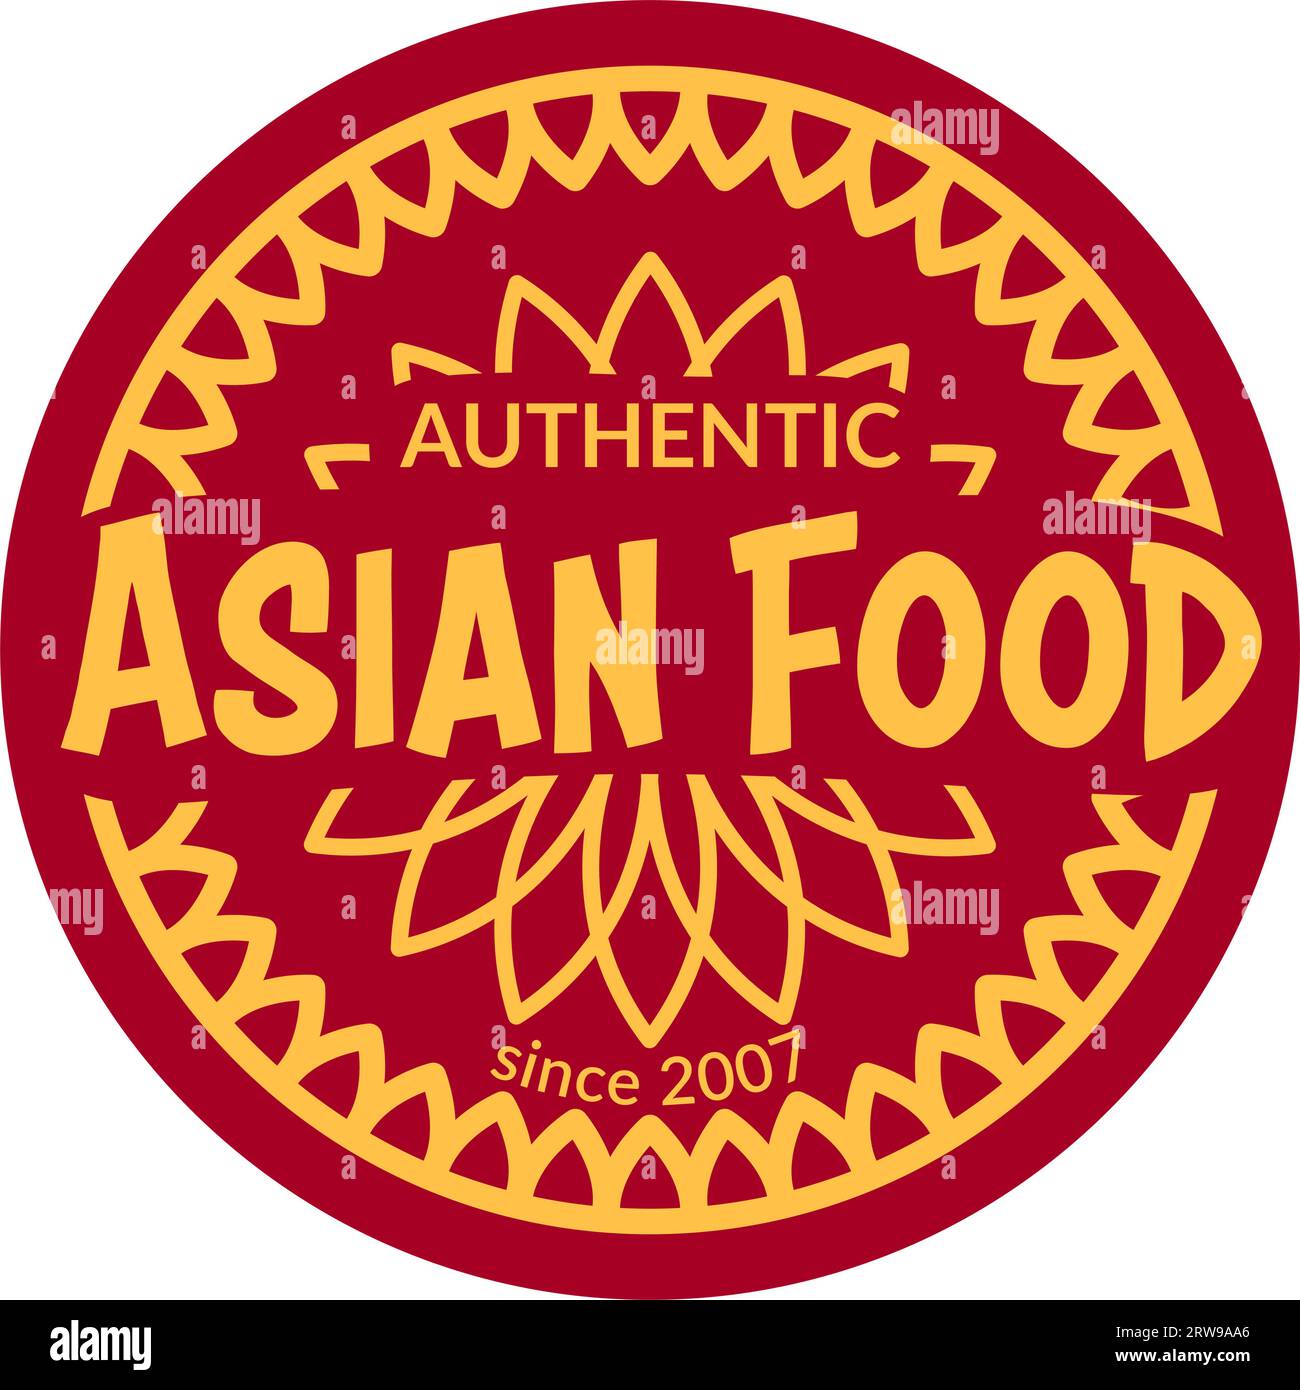 Authentisches asiatisches Essen, leckeres Essen seit 2007 Vektor Stock Vektor